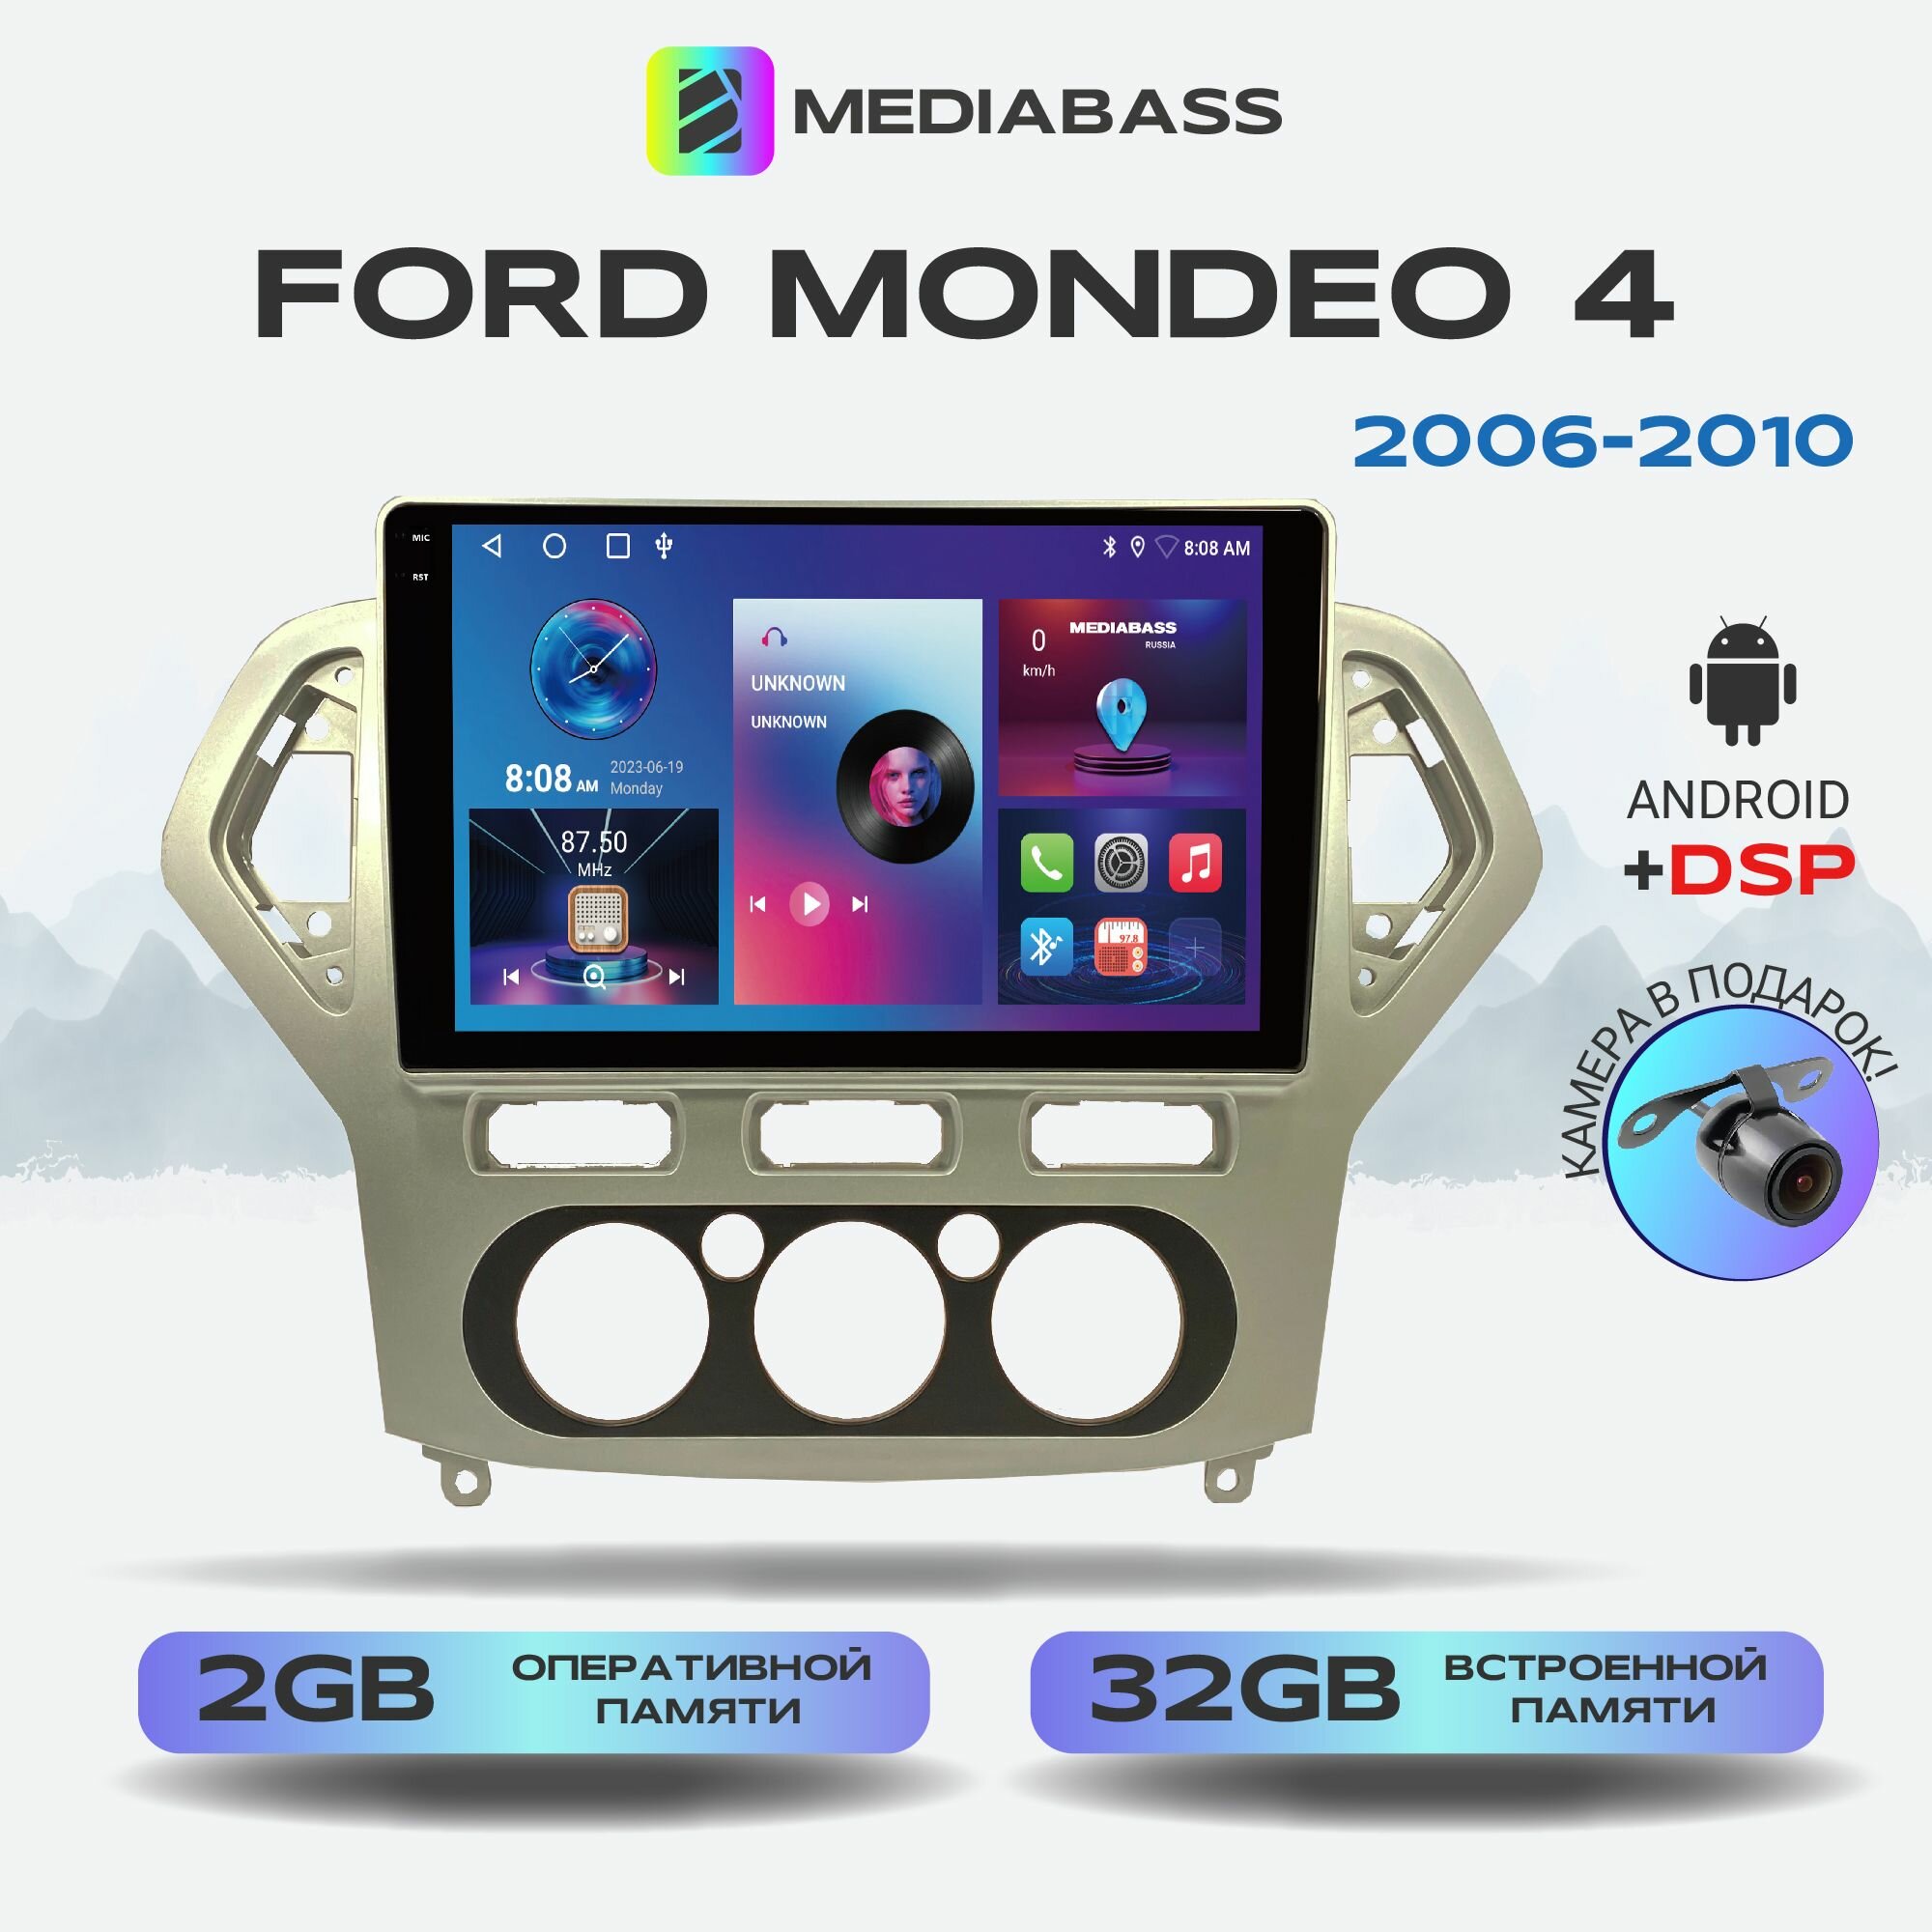 Автомагнитола Mediabass PRO Ford Mondeo 4 2006-2010, Android 12, 2/32ГБ / Форд Мондео 4, 4-ядерный процессор, QLED экран с разрешением 1280*720, DSP, чип-усилитель YD7388